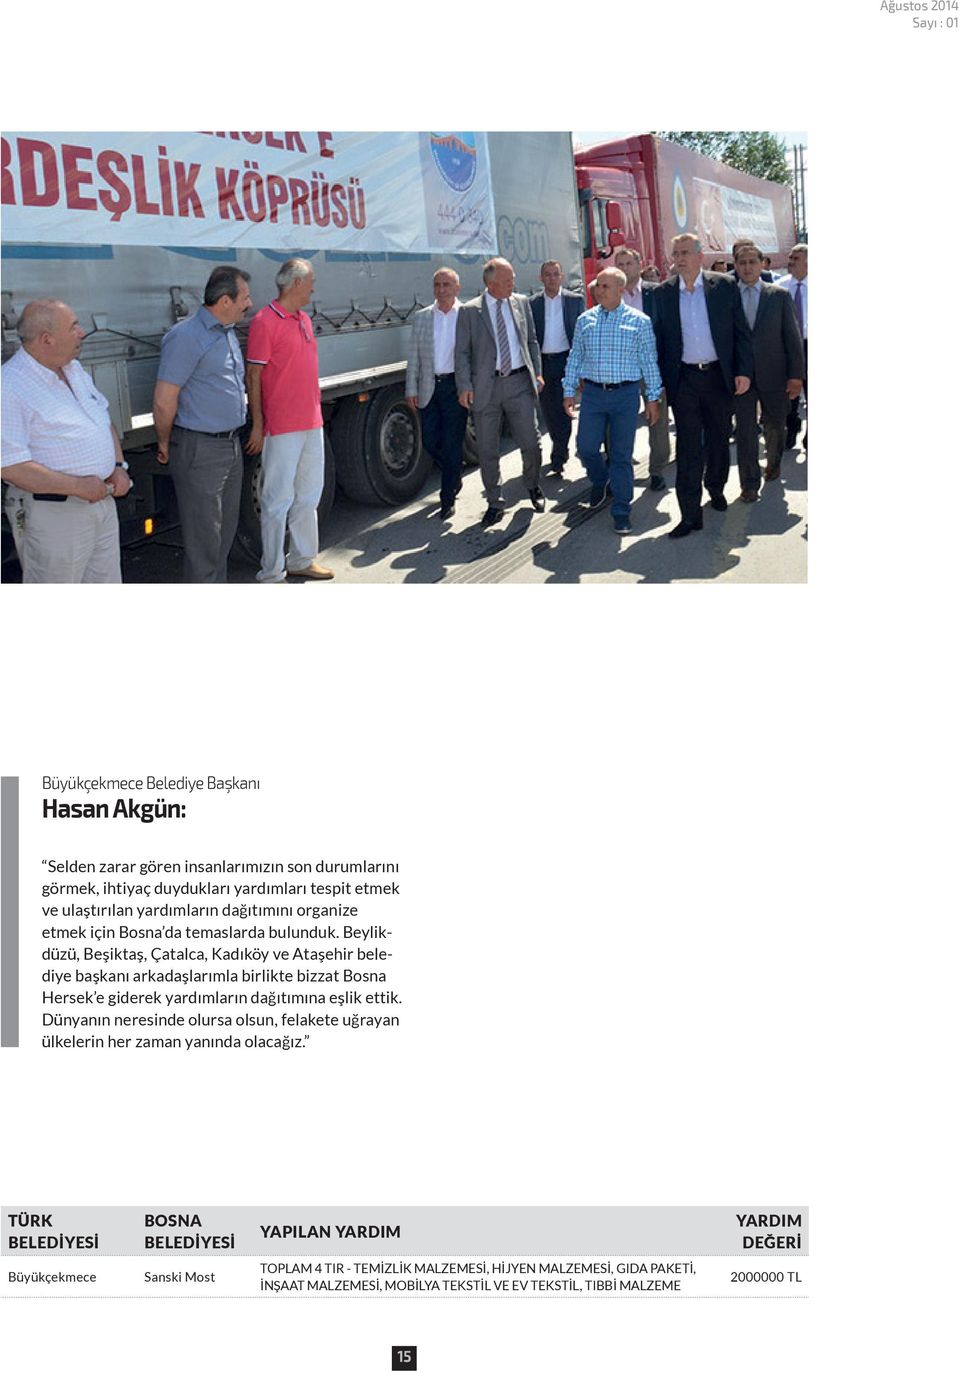 Beylikdüzü, Beşiktaş, Çatalca, Kadıköy ve Ataşehir belediye başkanı arkadaşlarımla birlikte bizzat Bosna Hersek e giderek yardımların dağıtımına eşlik ettik.